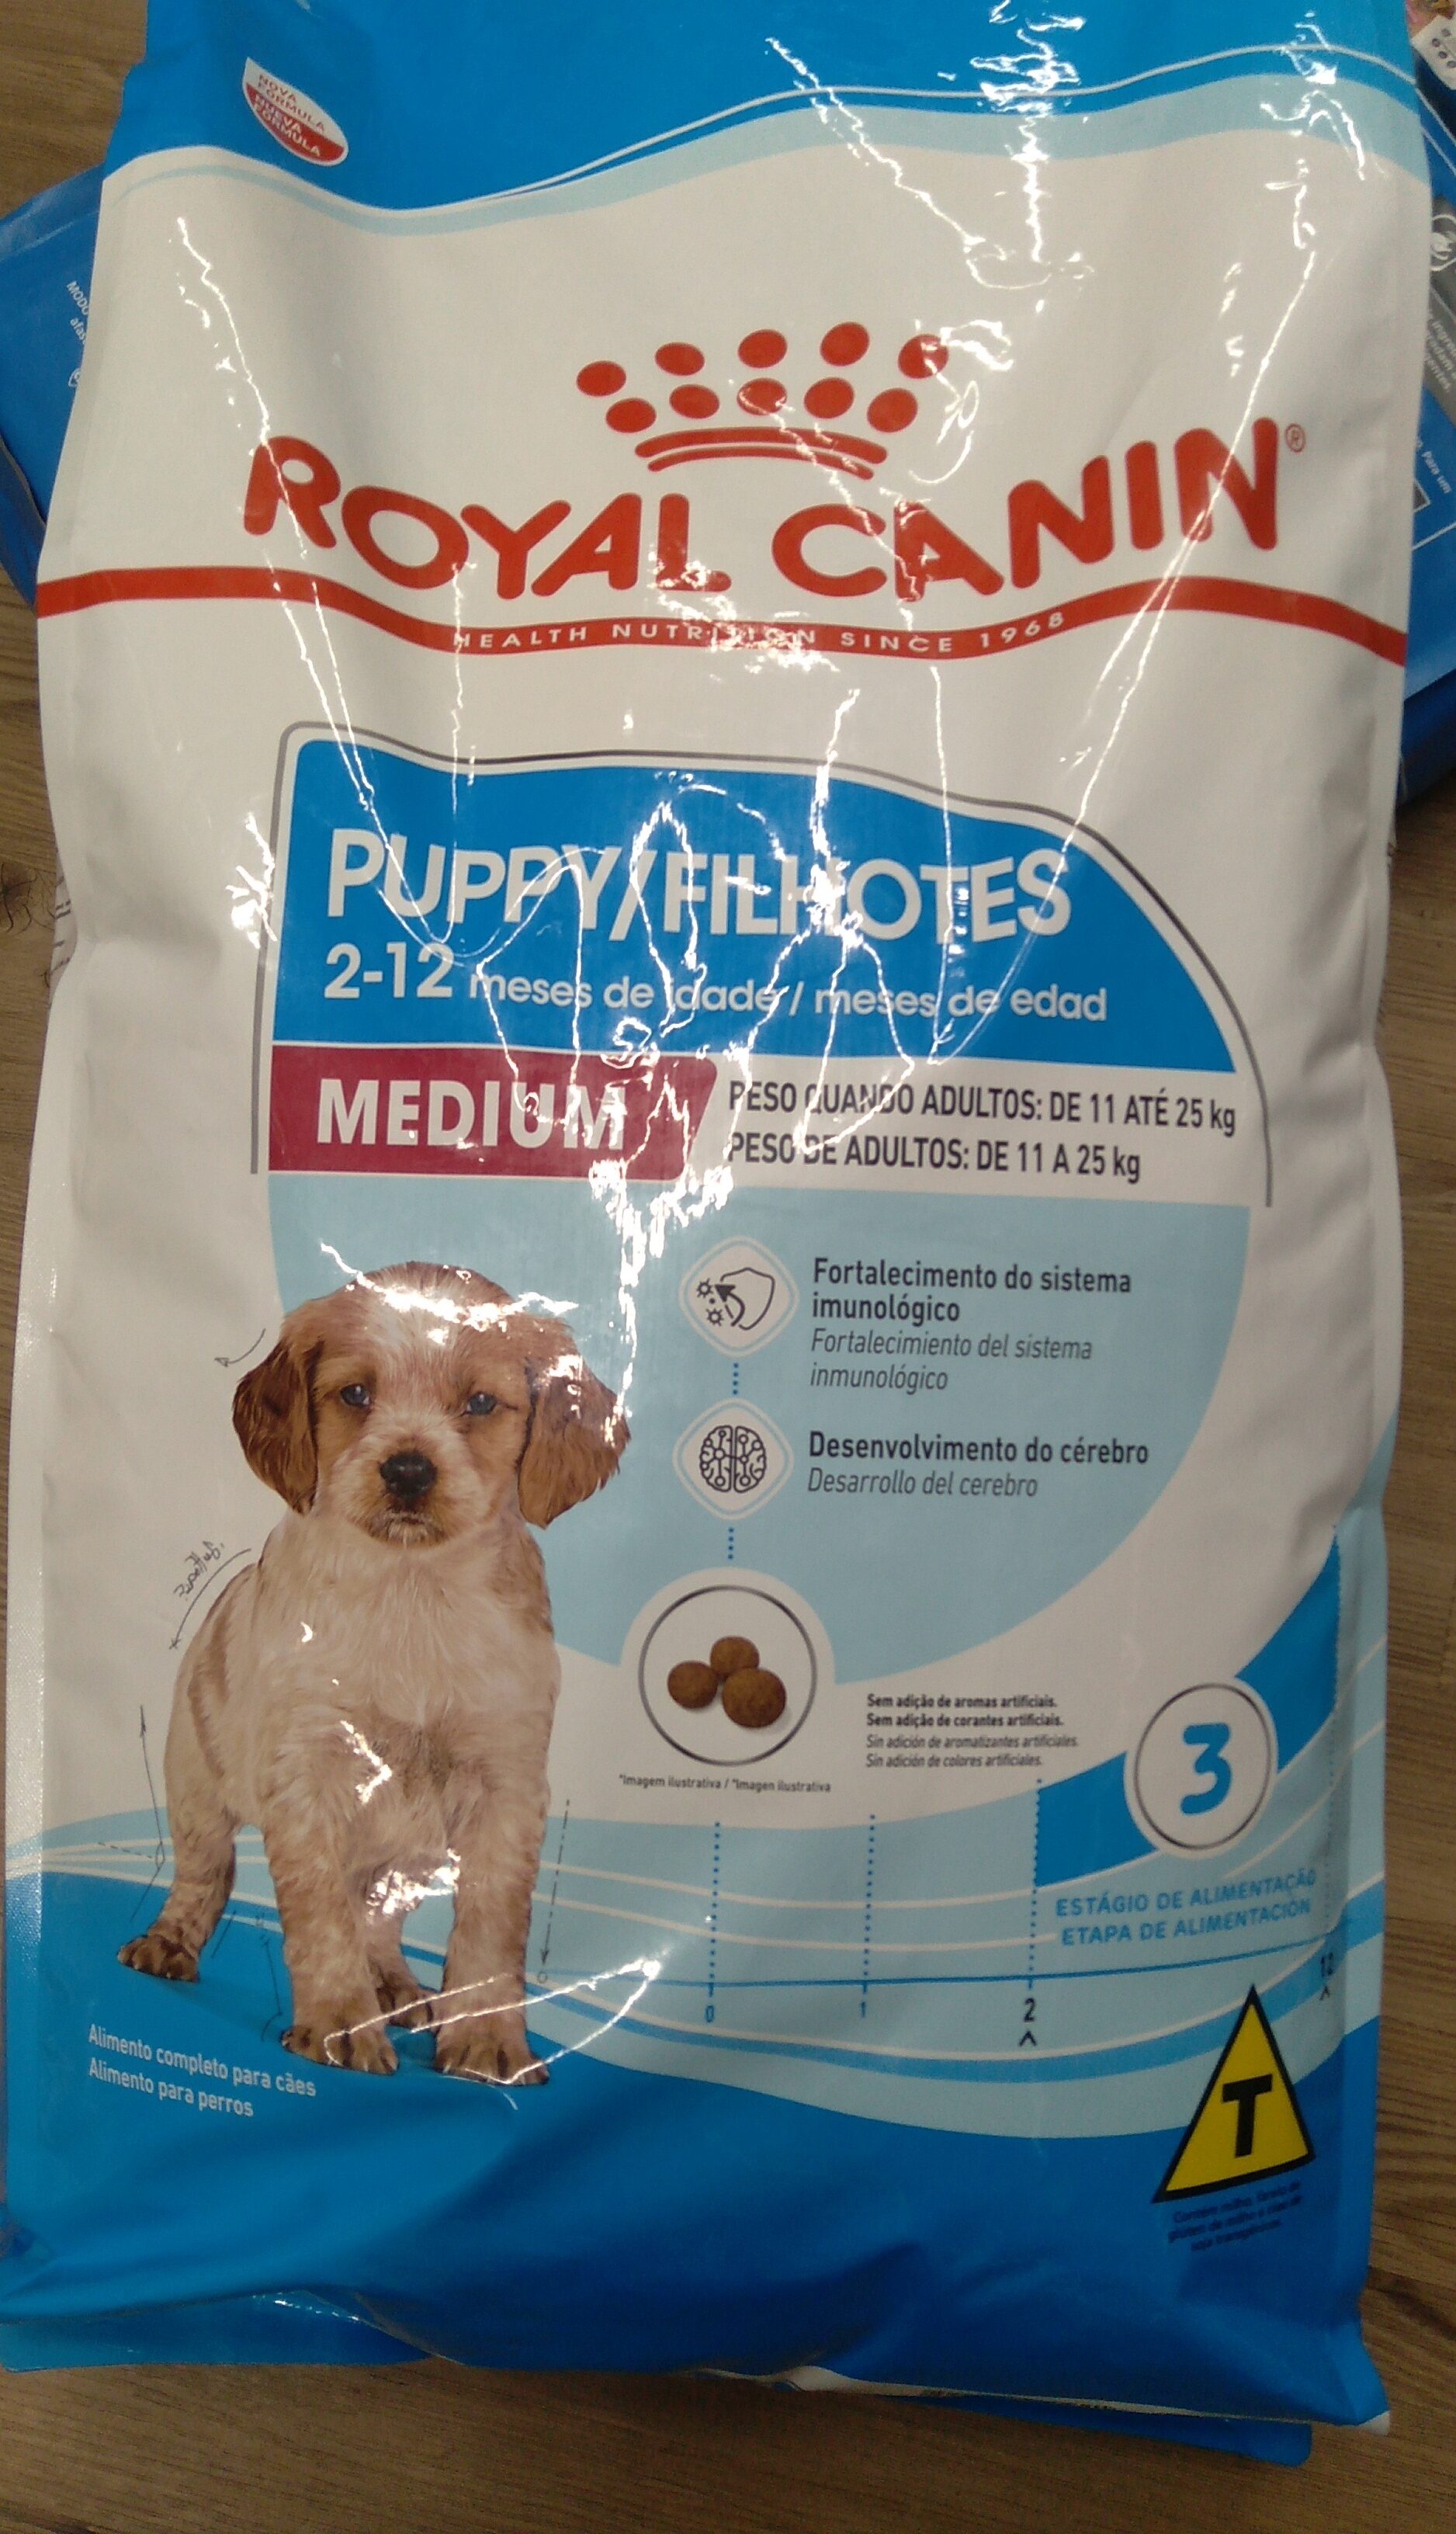 ROYAL CANIN 15Kg Med Puppy JR - Product - pt